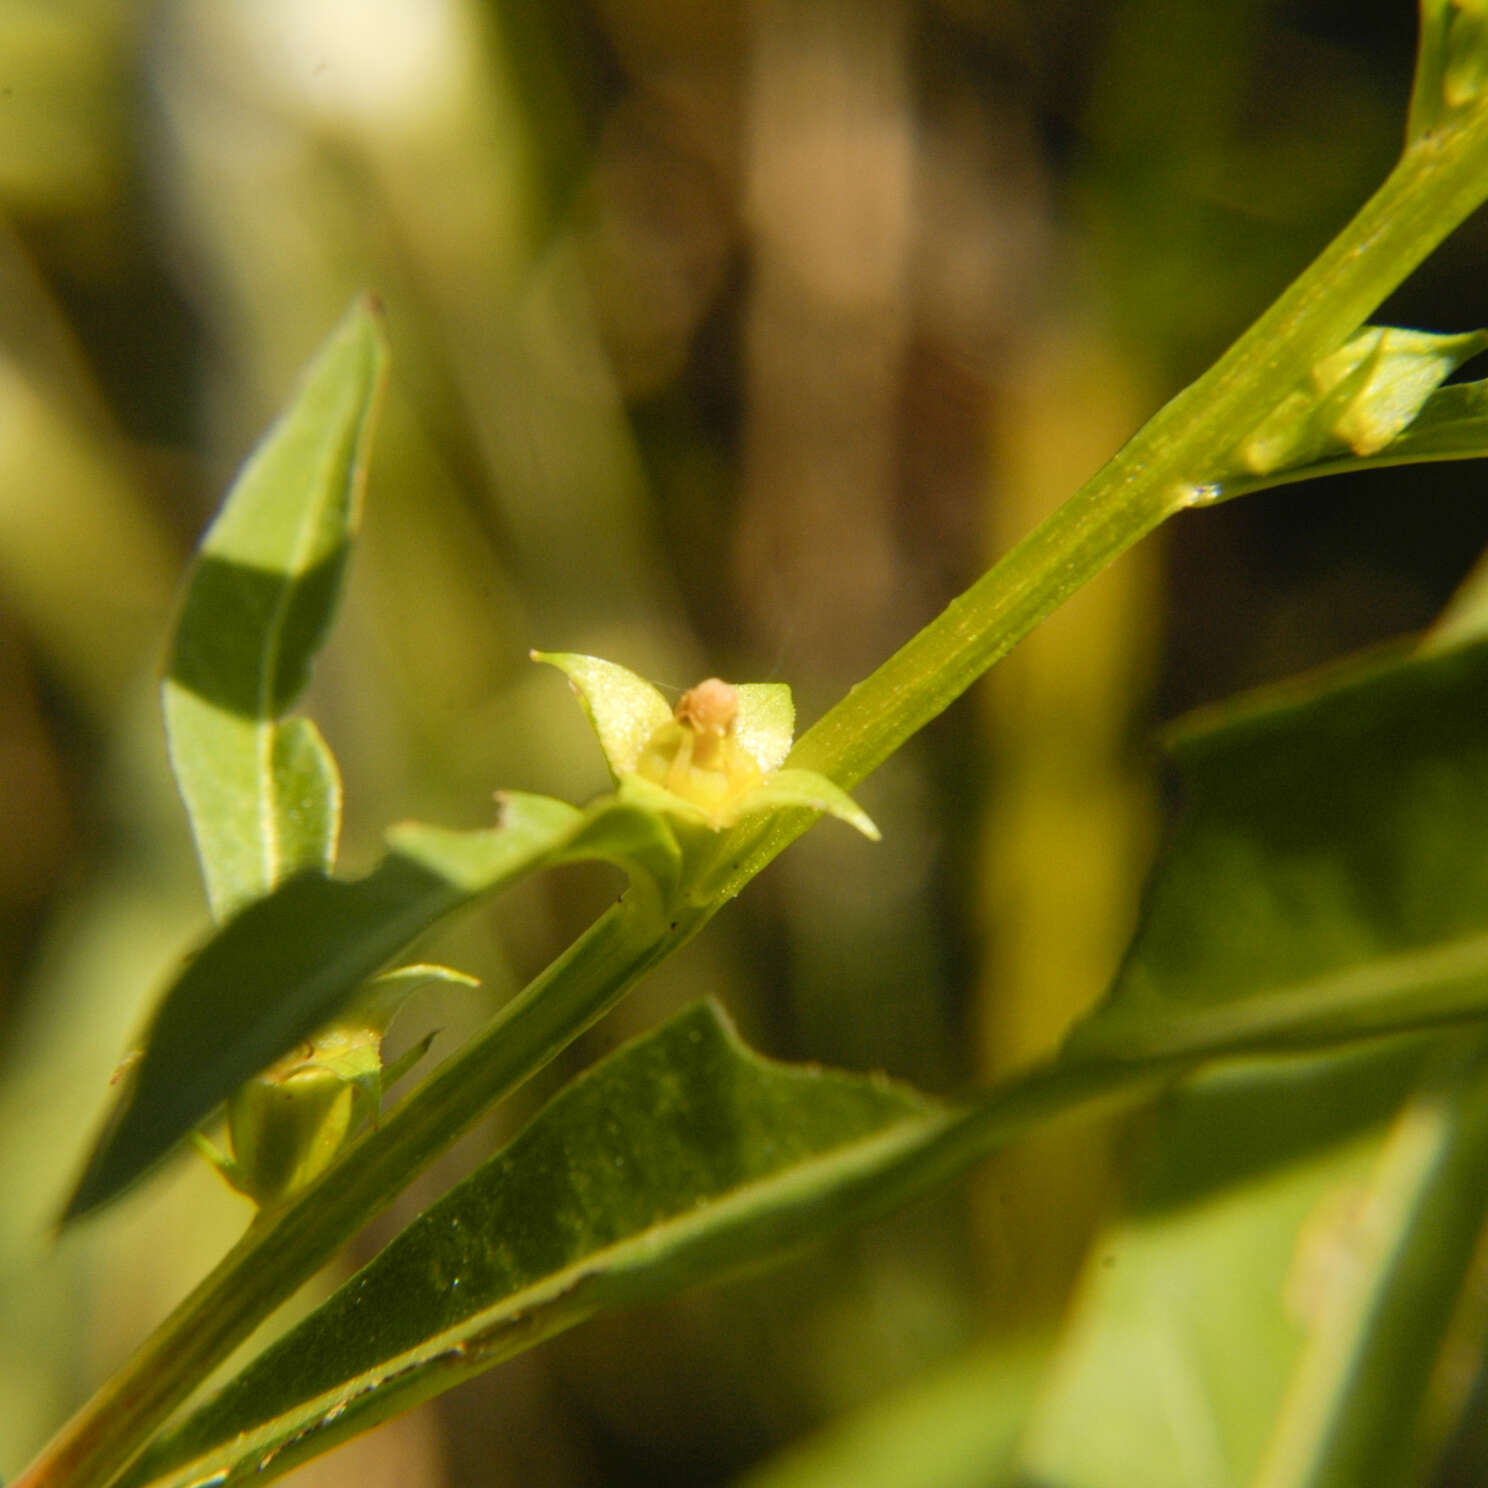 Image of primrose-willow